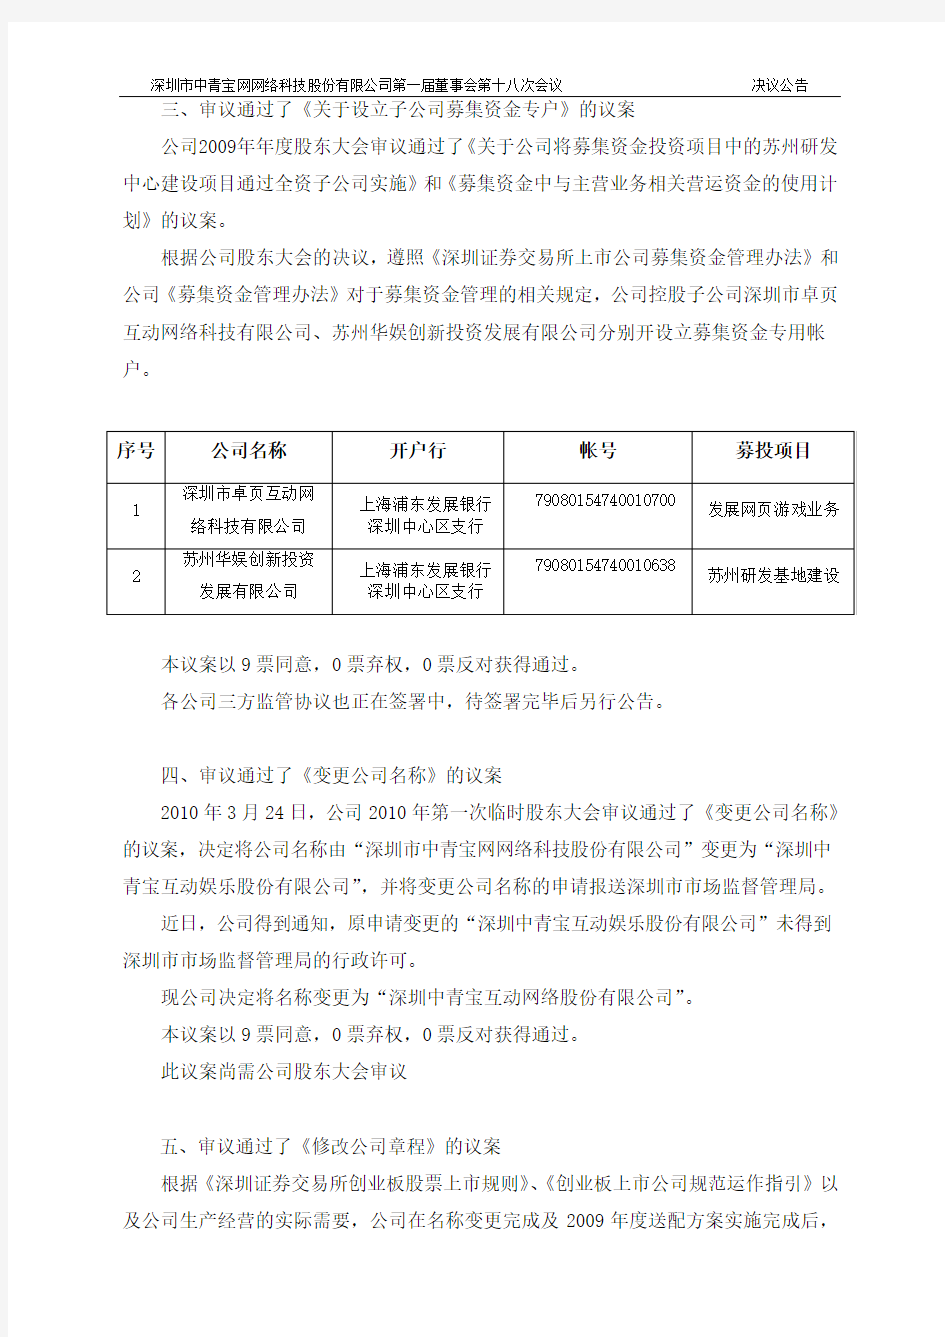 中青宝：以通讯形式召开第一届董事会第十八次会议决议公告 2010-04-28